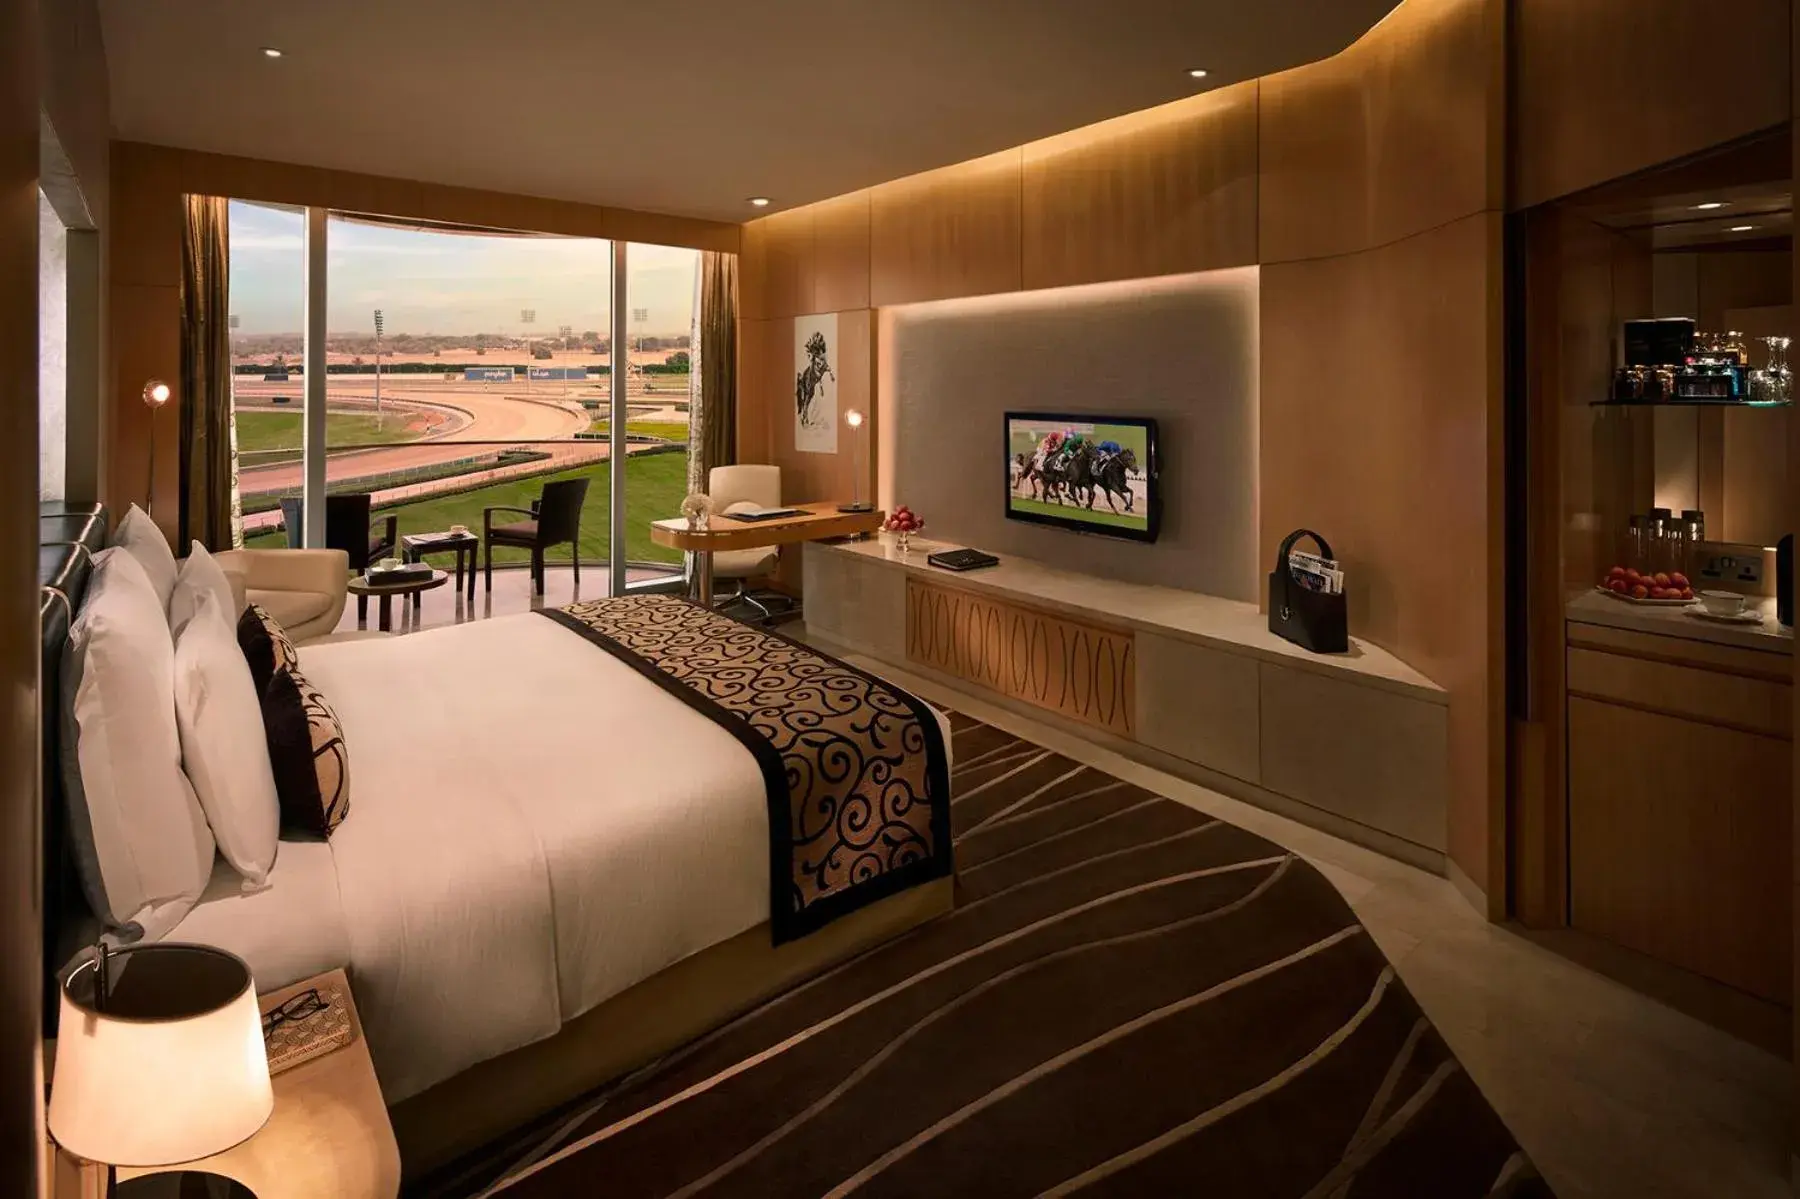 Bedroom in The Meydan Hotel